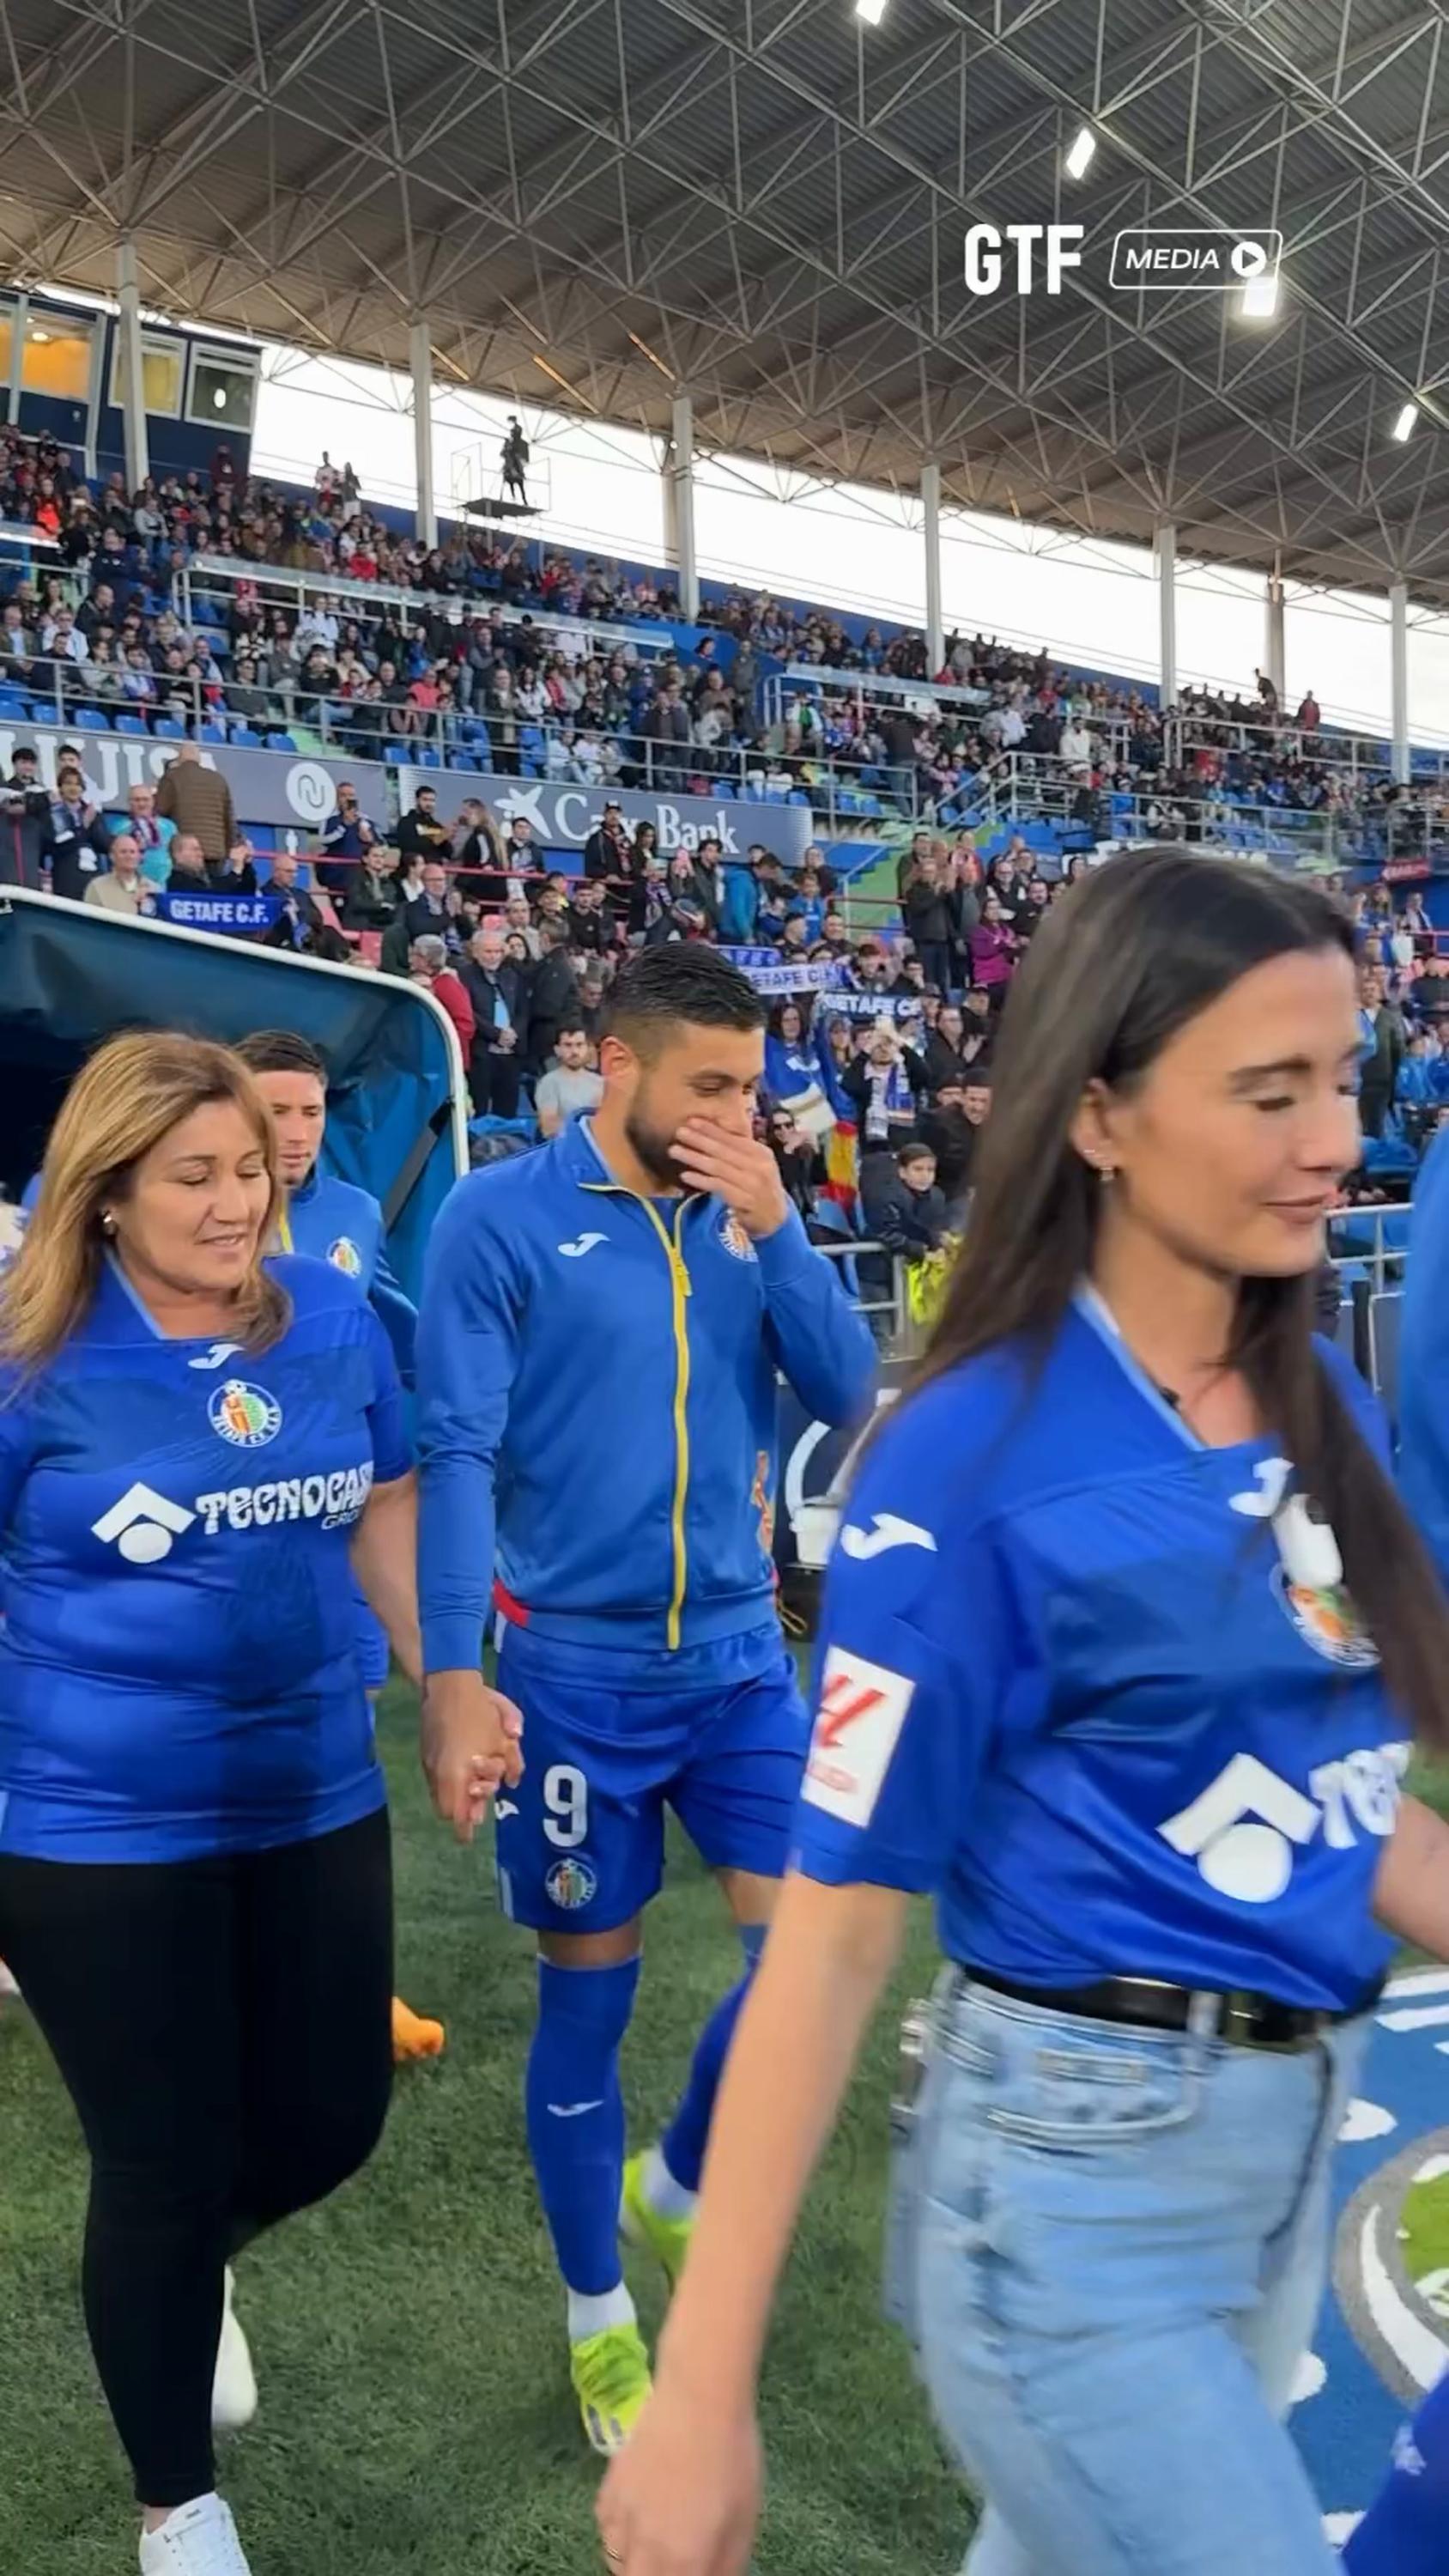 en vidéo : pour la fête des mères en espagne, des footballeurs entrent sur le terrain aux bras de leurs... mamans